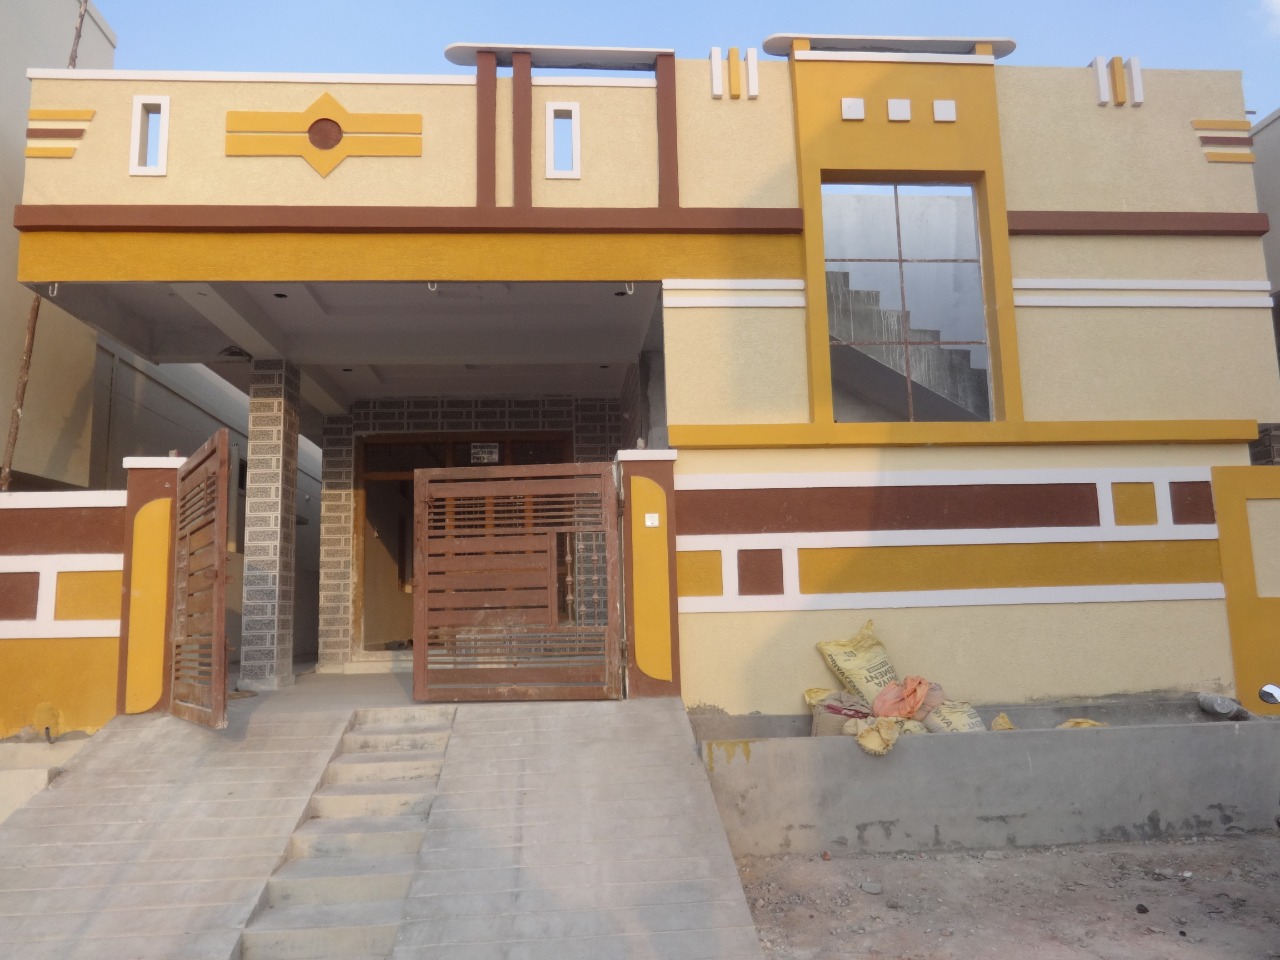 flat for sale in malkajgiri below 1 lakhs